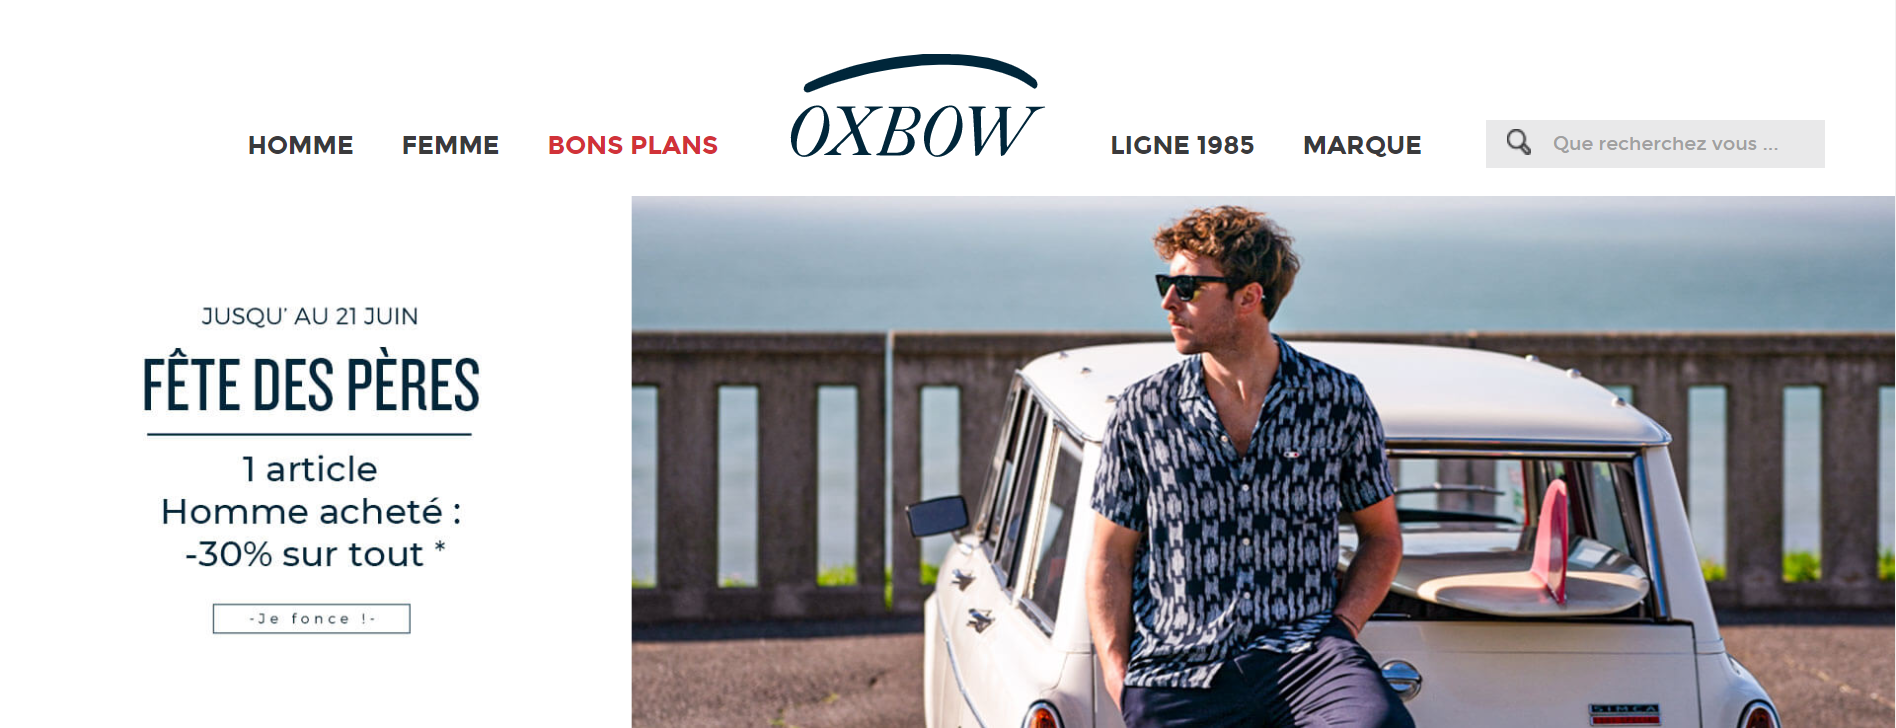 法国户外服饰集团乐飞叶 Lafuma 将旗下品牌 Oxbow 出售给私人投资者